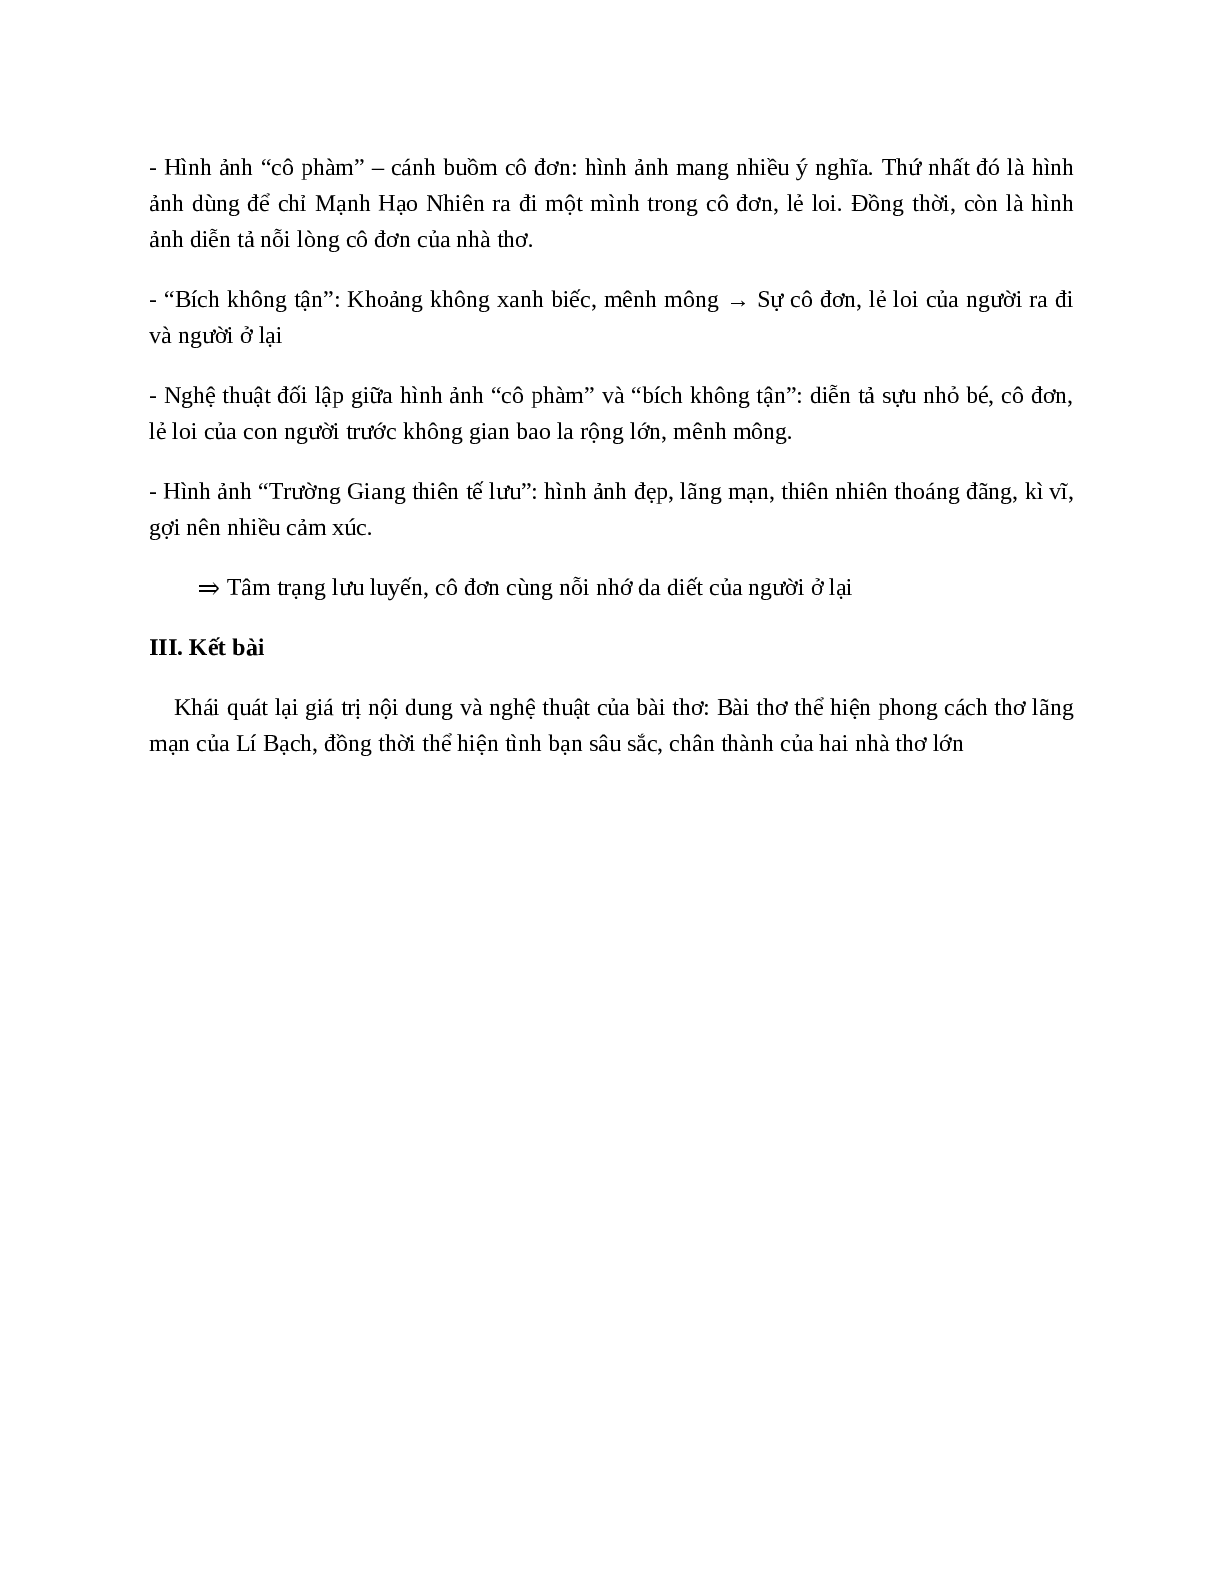 Tại Lầu Hoàng Hạc tiễn Mạnh Hạo Nhiên đi Quảng Lăng - nội dung, dàn ý phân tích, bố cục, tóm tắt (trang 4)